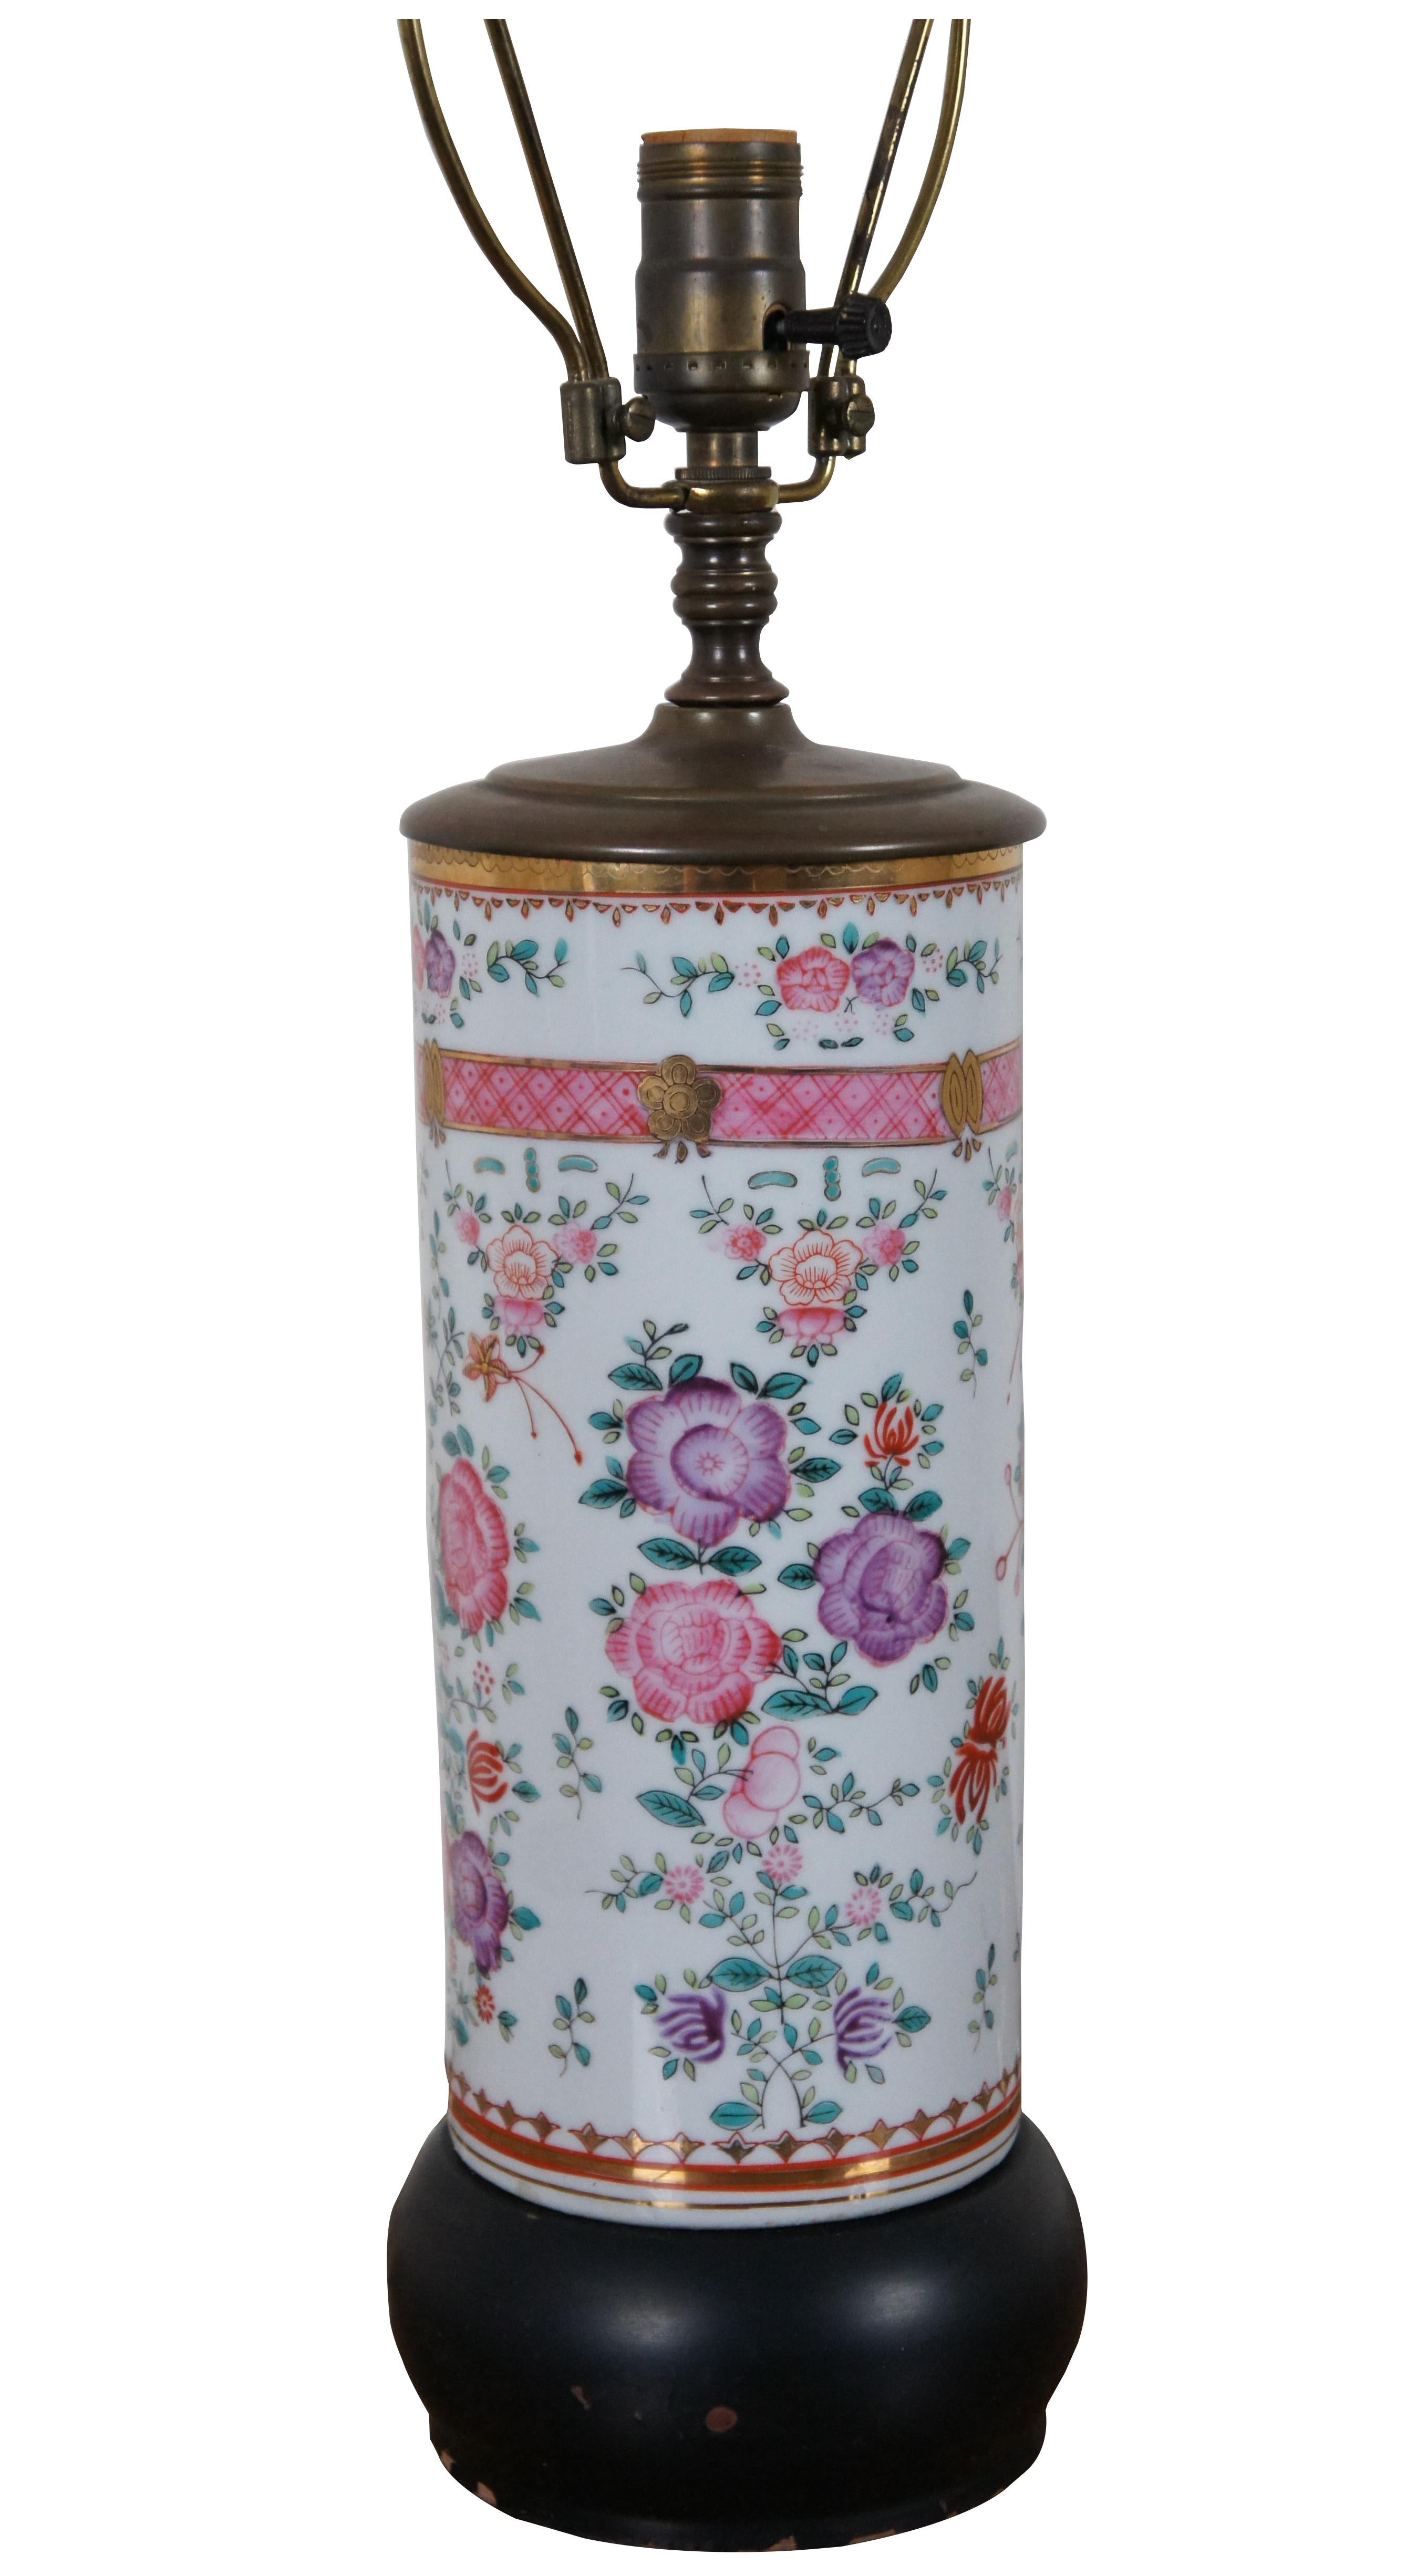 Lampe vase cylindrique en porcelaine chinoise ancienne de la famille rose, avec base et plateau en bois, décorée d'un motif de fleurs en rose et violet.

5,5 po x 18,75 po / Hauteur totale - 28,5 po  (Diamètre x Hauteur)